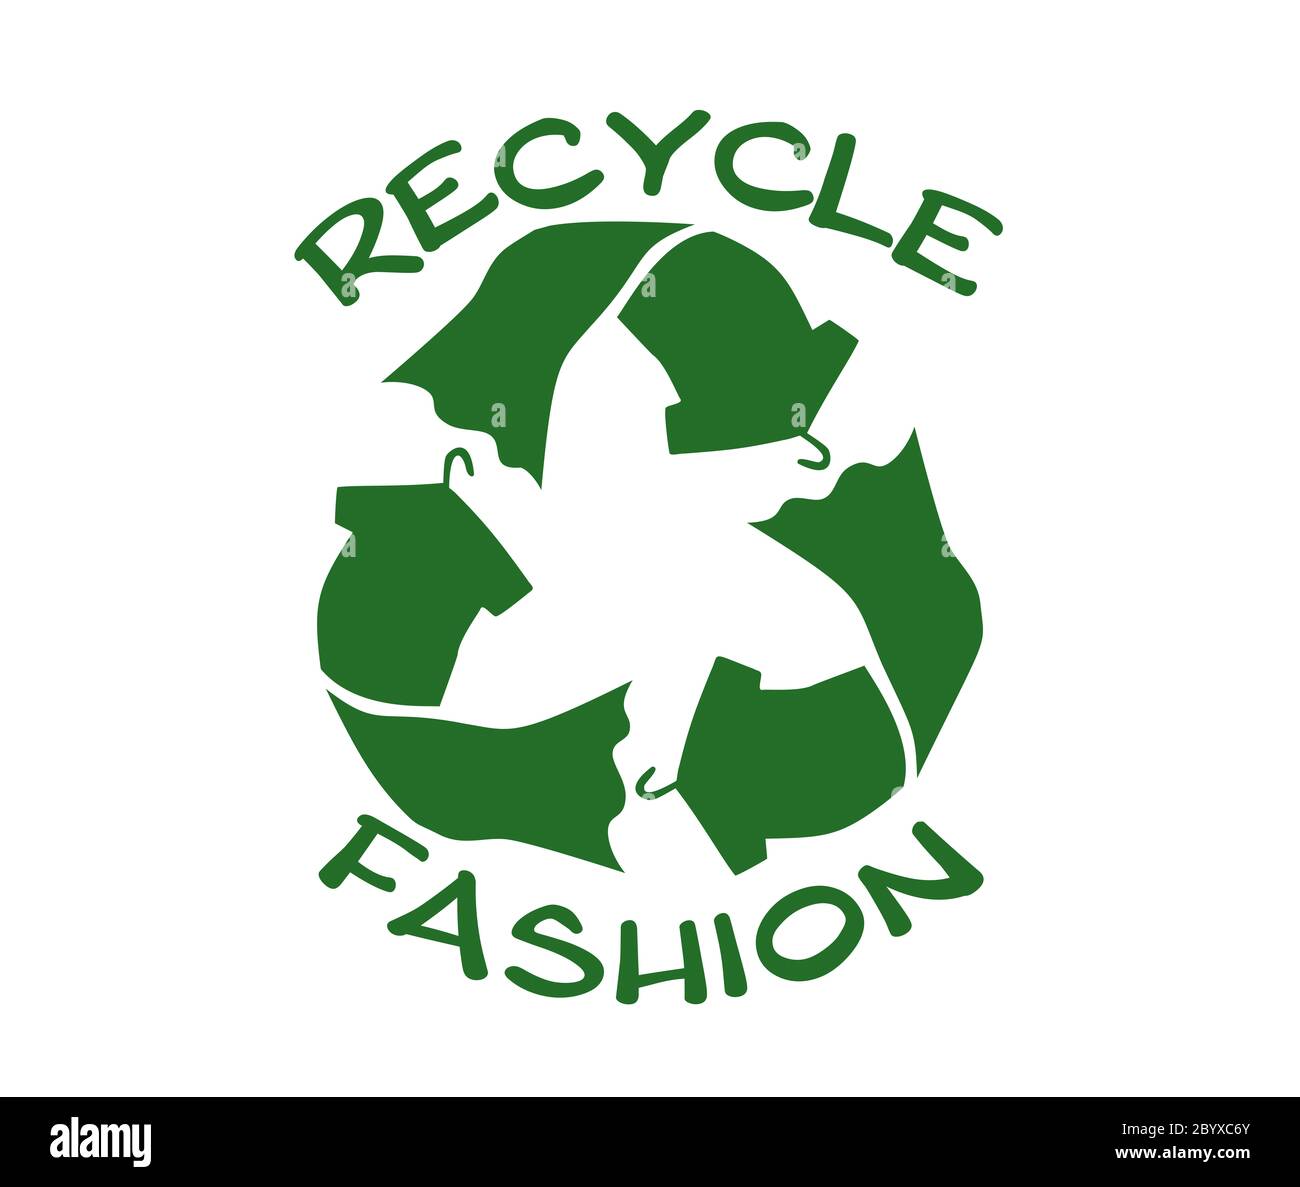 Riciclare la moda con il simbolo del riciclaggio dei tessuti segno, la moda sostenibile per l'ambiente per riutilizzare i rifiuti, ridurre le discariche e salvare il pianeta Foto Stock